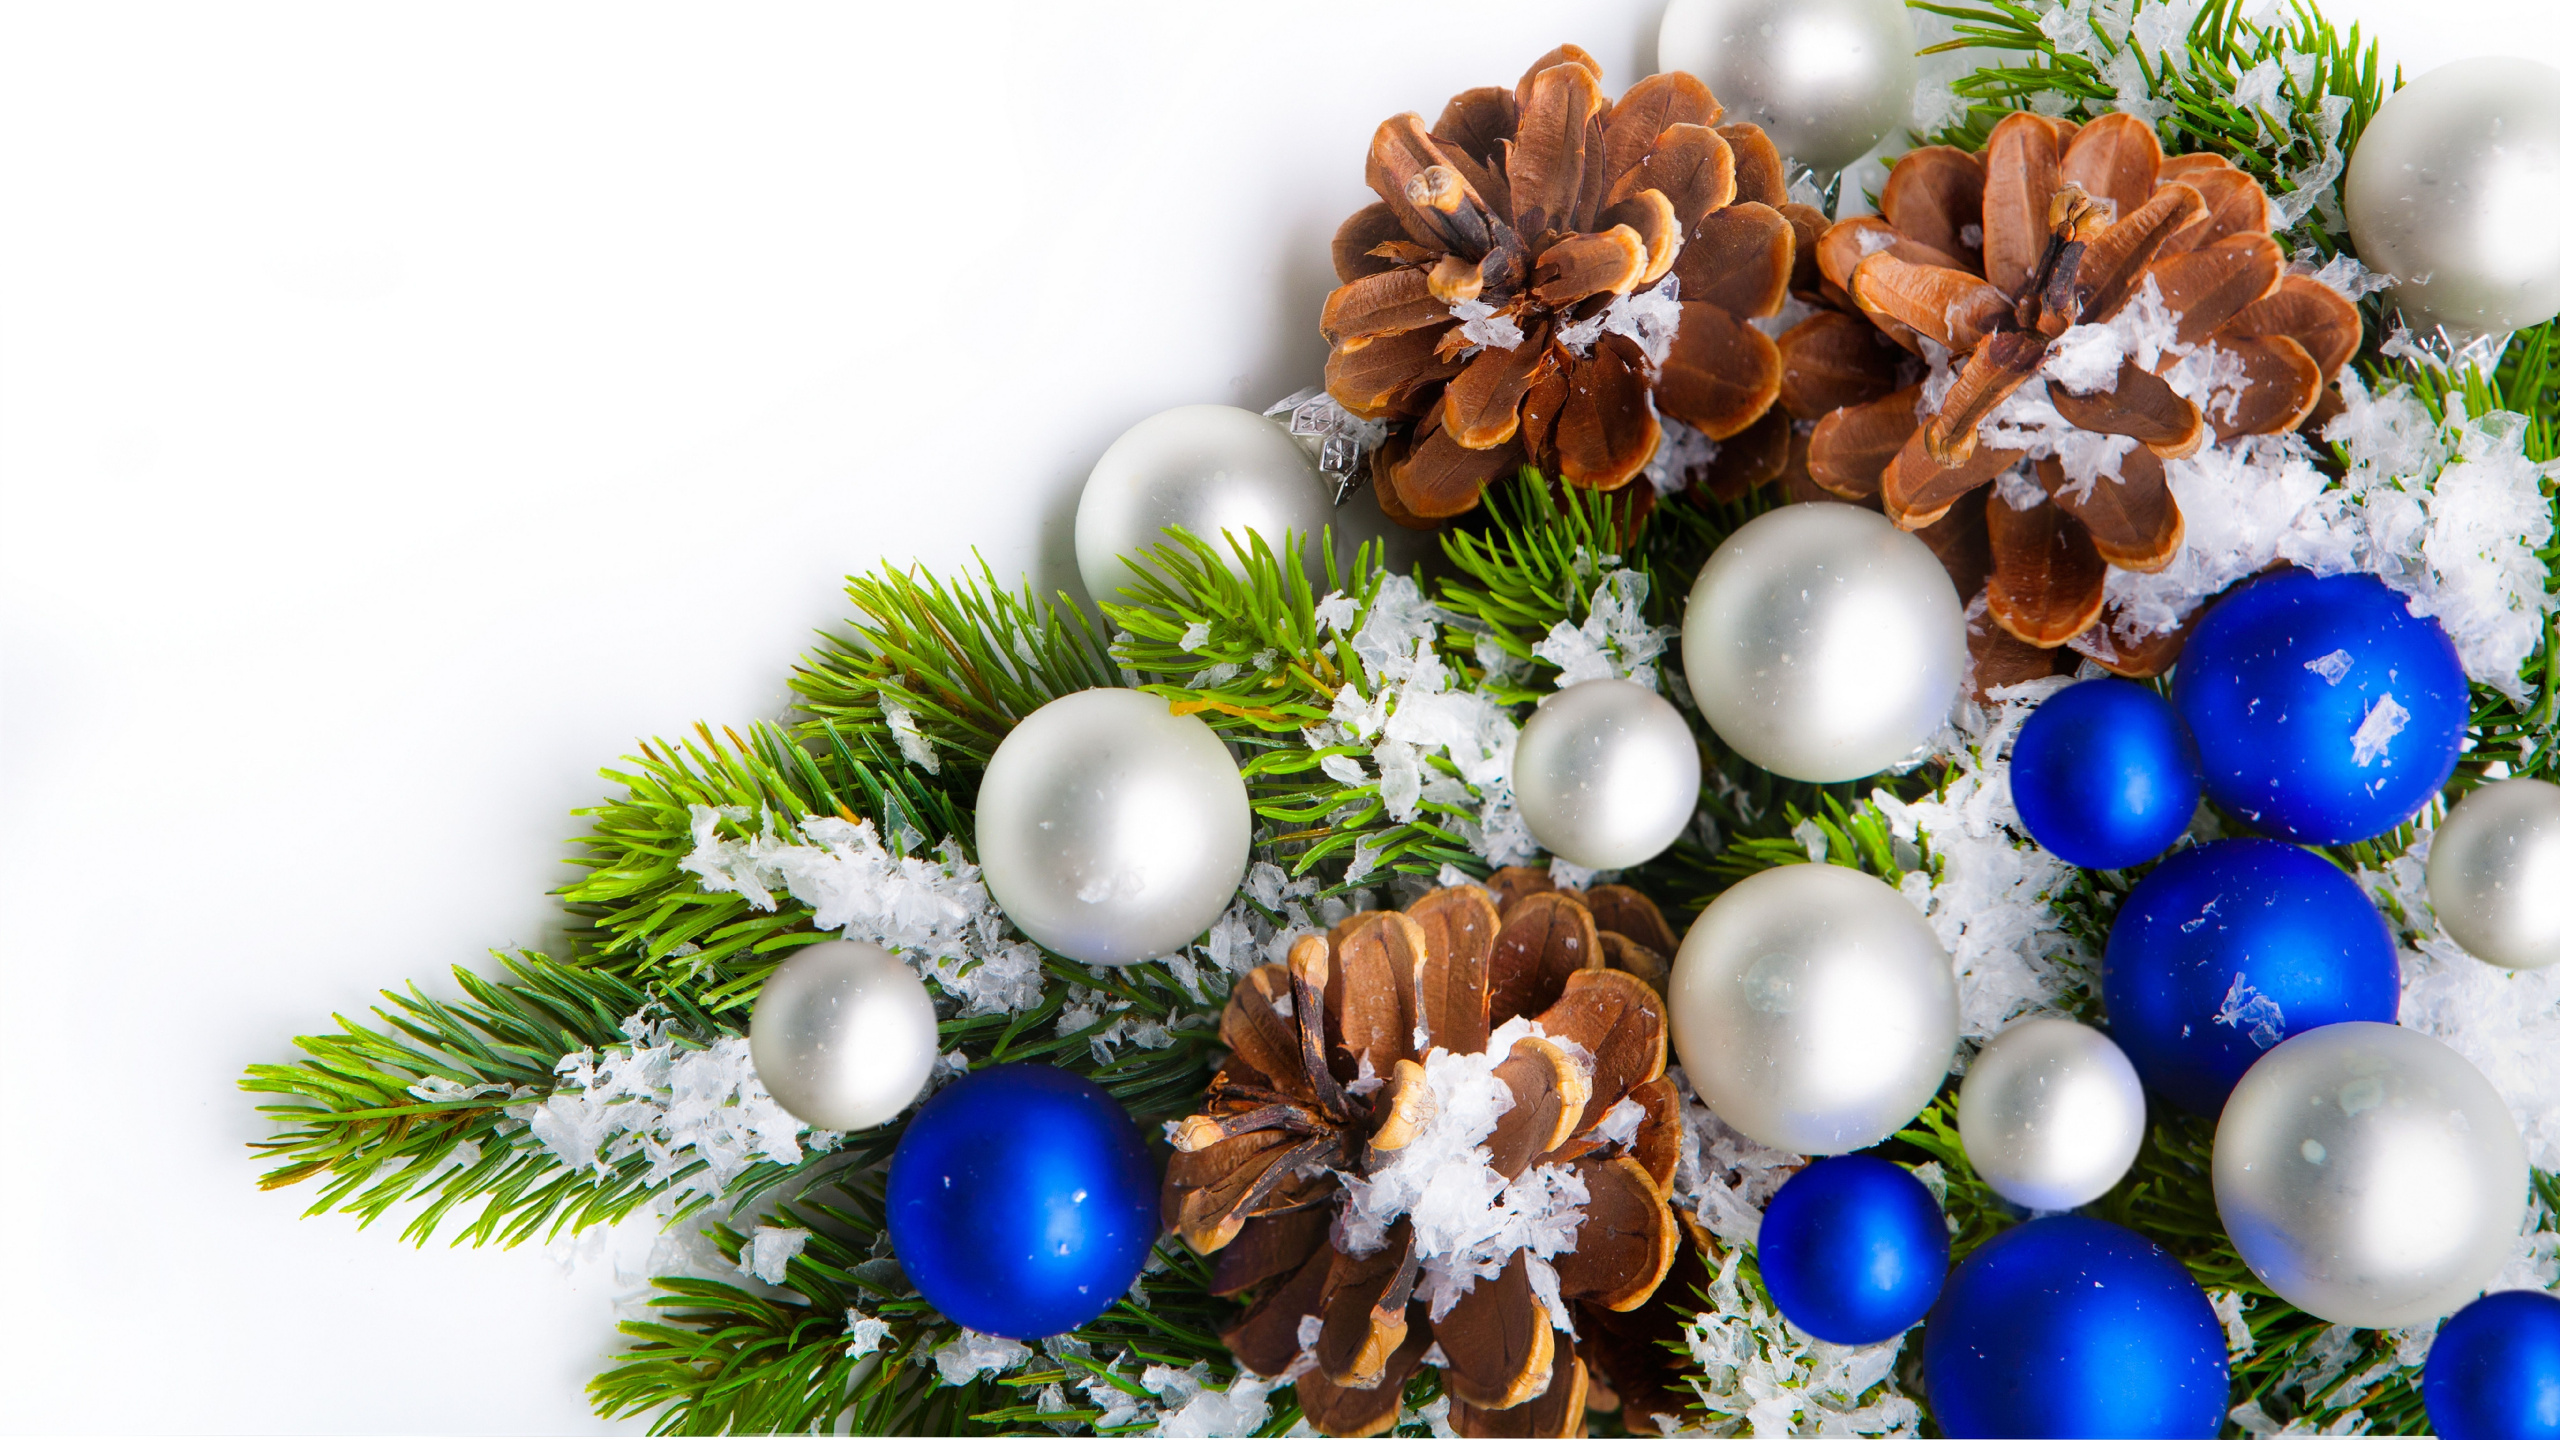 Weihnachten, Neujahr, Weihnachtsdekoration, Christmas Ornament, Baum. Wallpaper in 2560x1440 Resolution